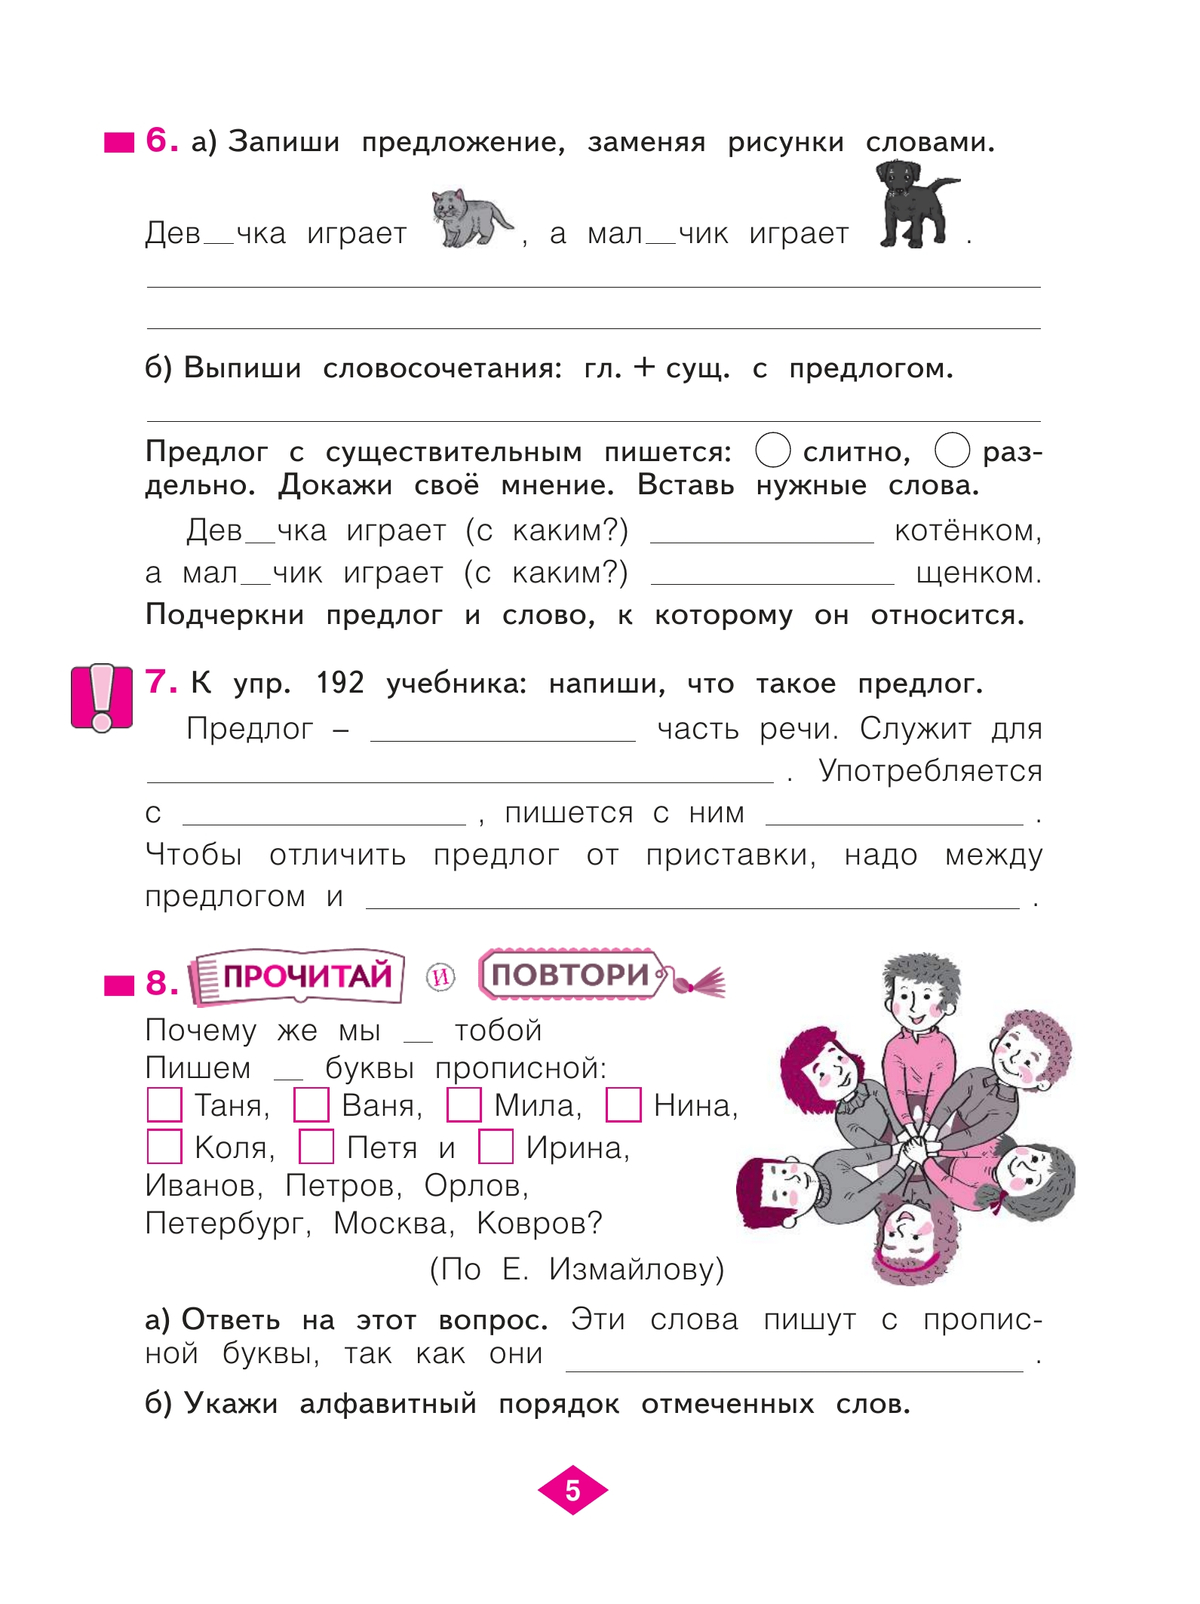 Русский язык. Рабочая тетрадь. 3 класс. В 4-х частях. Часть 2 3